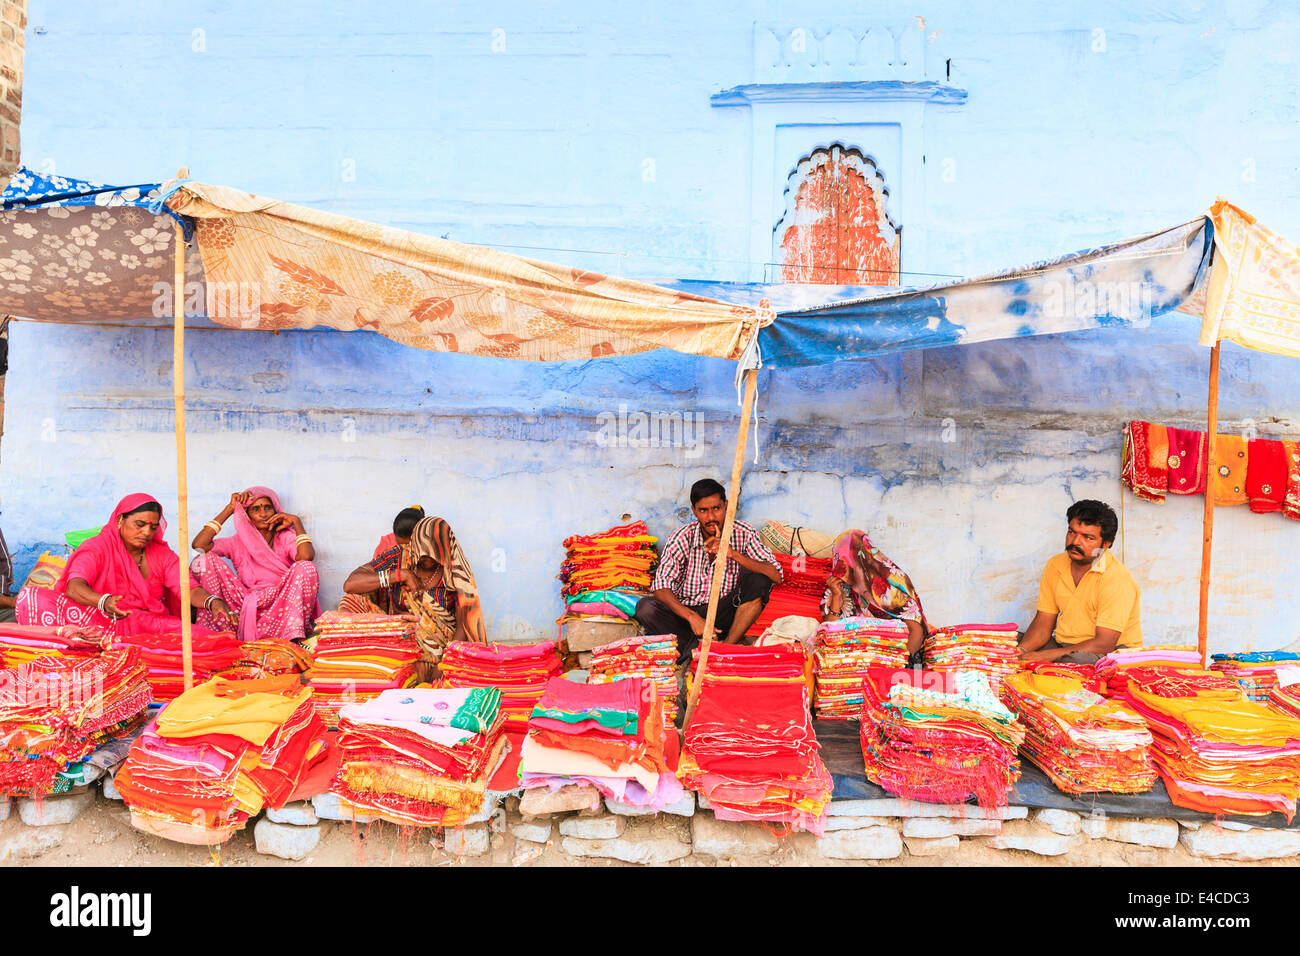 Décrochage de la soie, Jodhpur, Rajasthan, India Banque D'Images